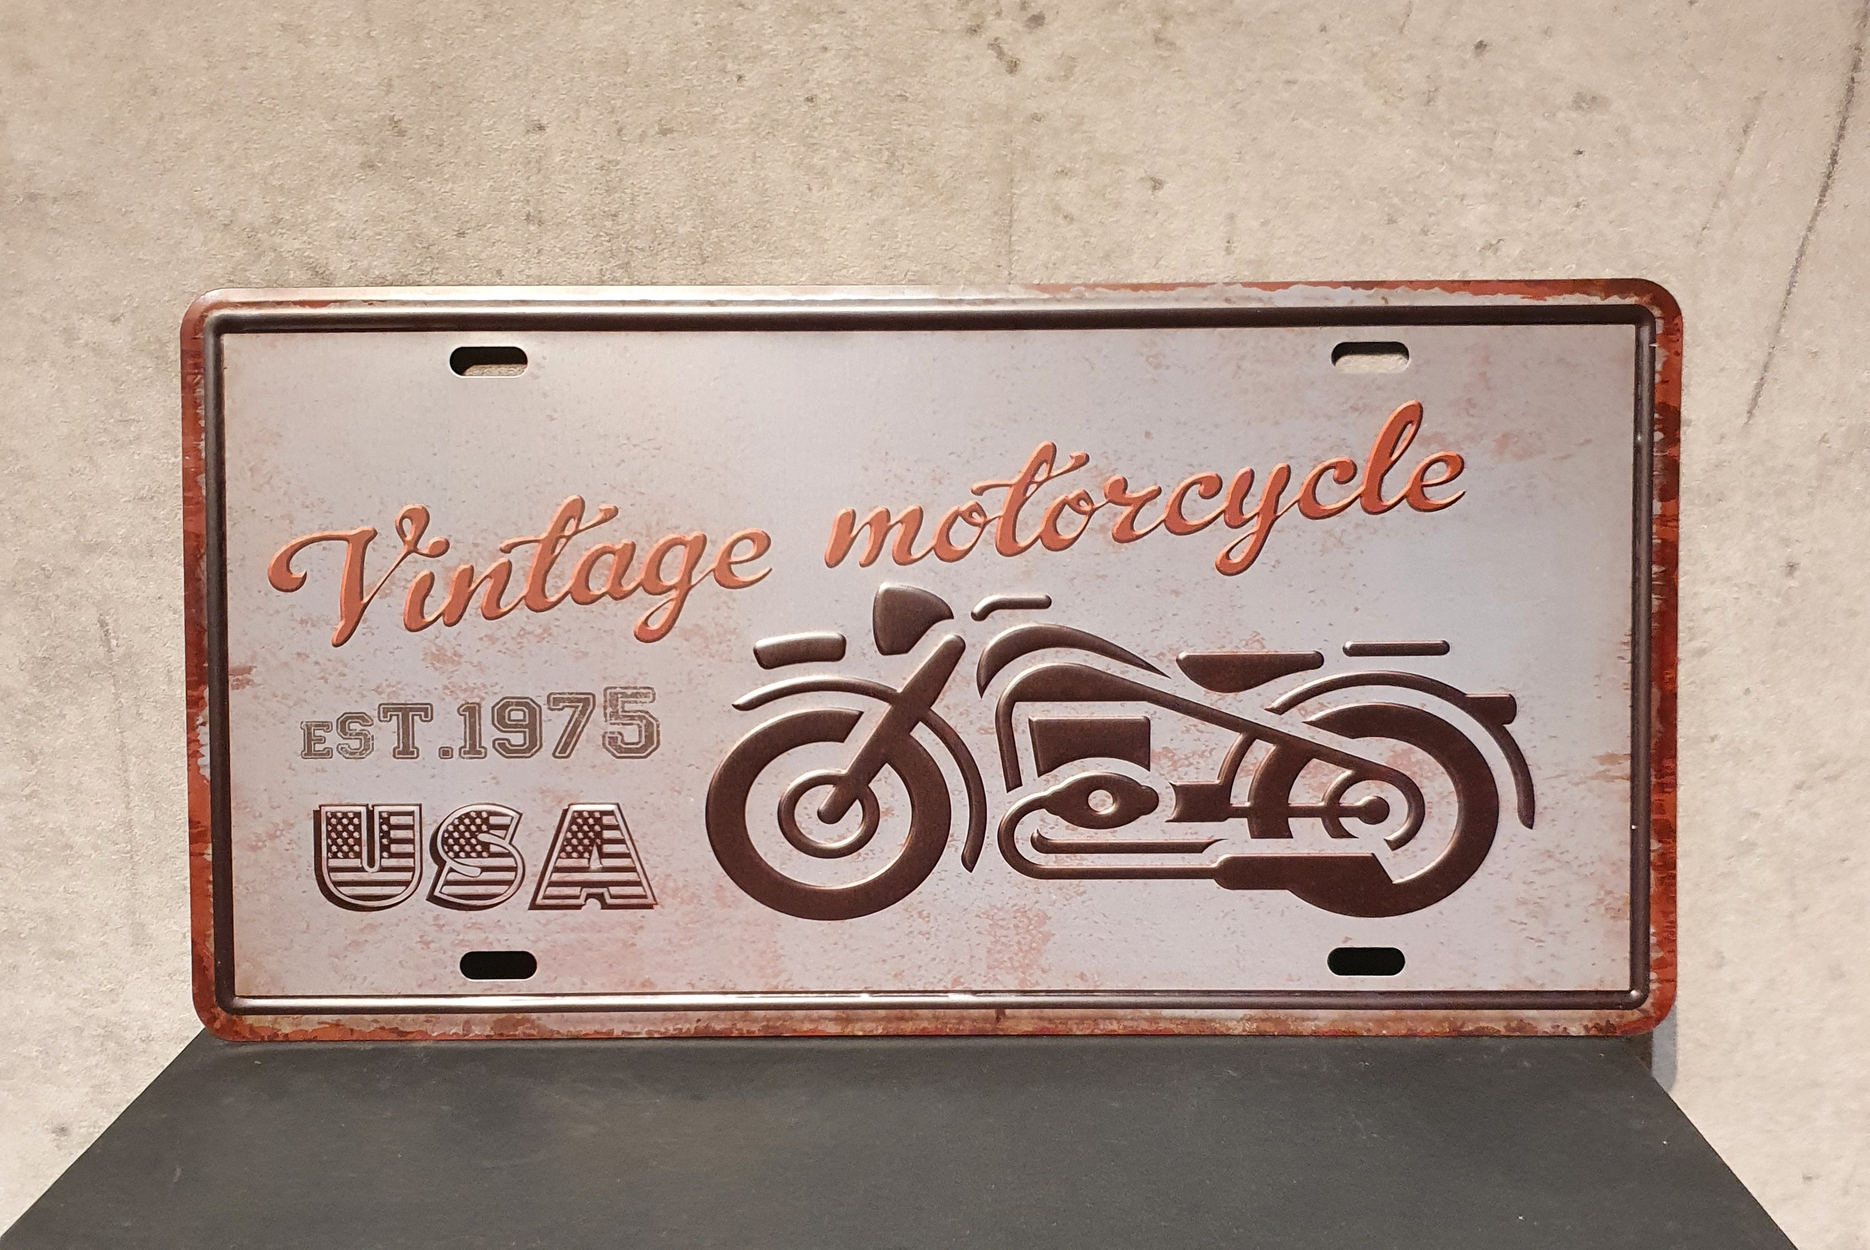 4128 - vintage motorcycle - inexmob